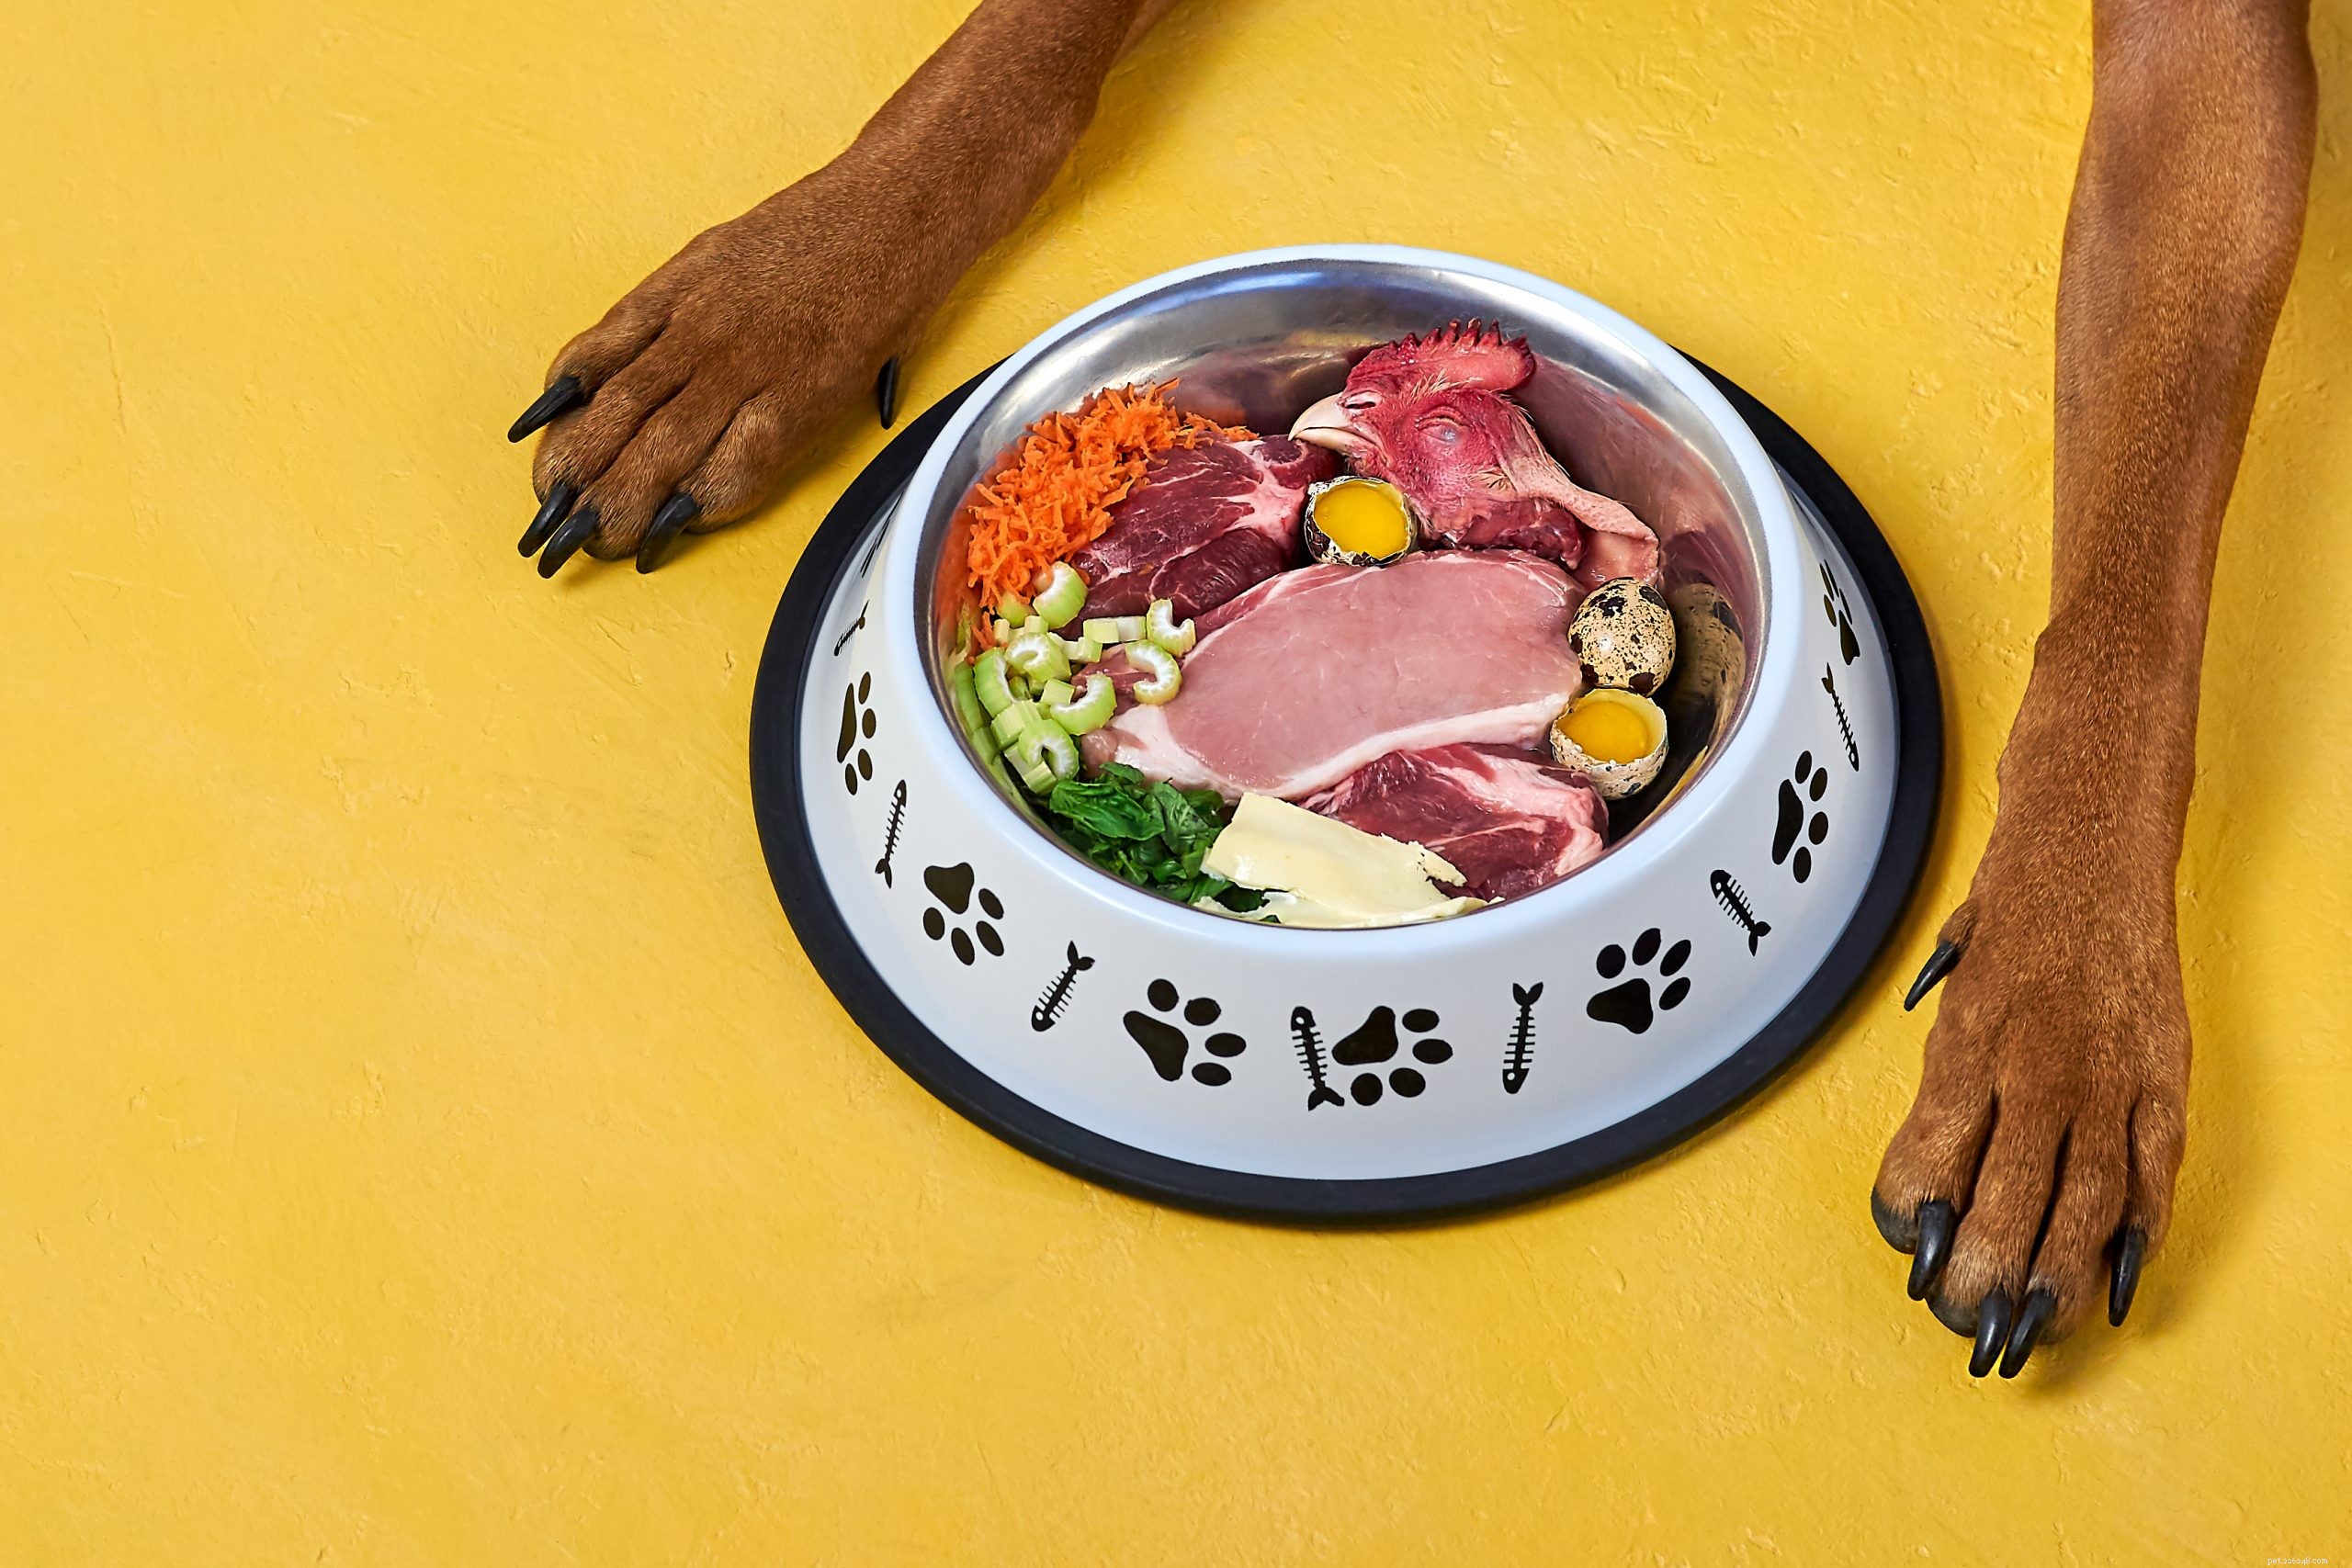 Как кормить собак с заболеваниями почек